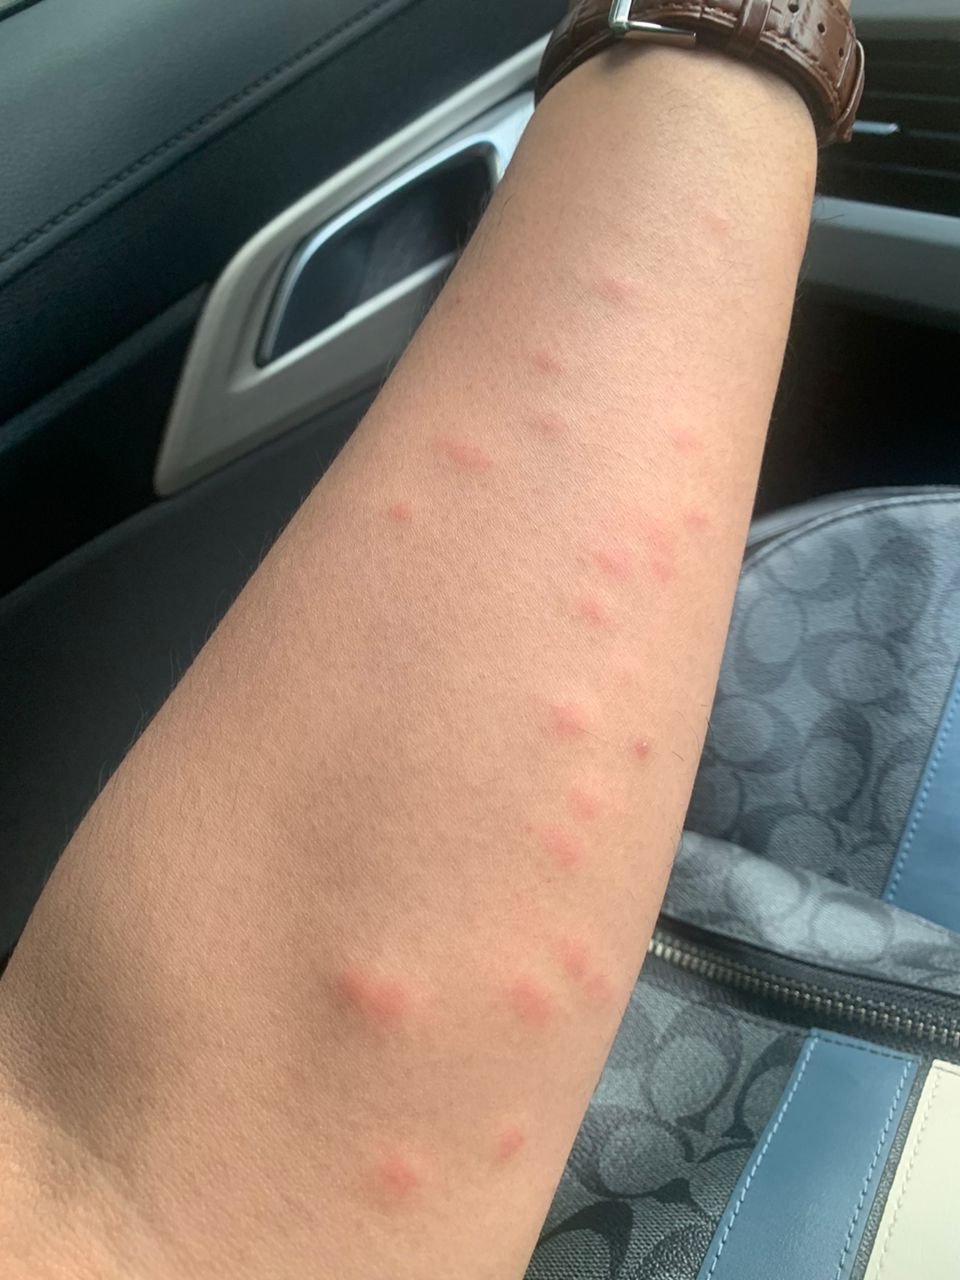 Tangan Hariz menjadi kemerah-merahan akibat digigit nyamuk. - Gambar PR